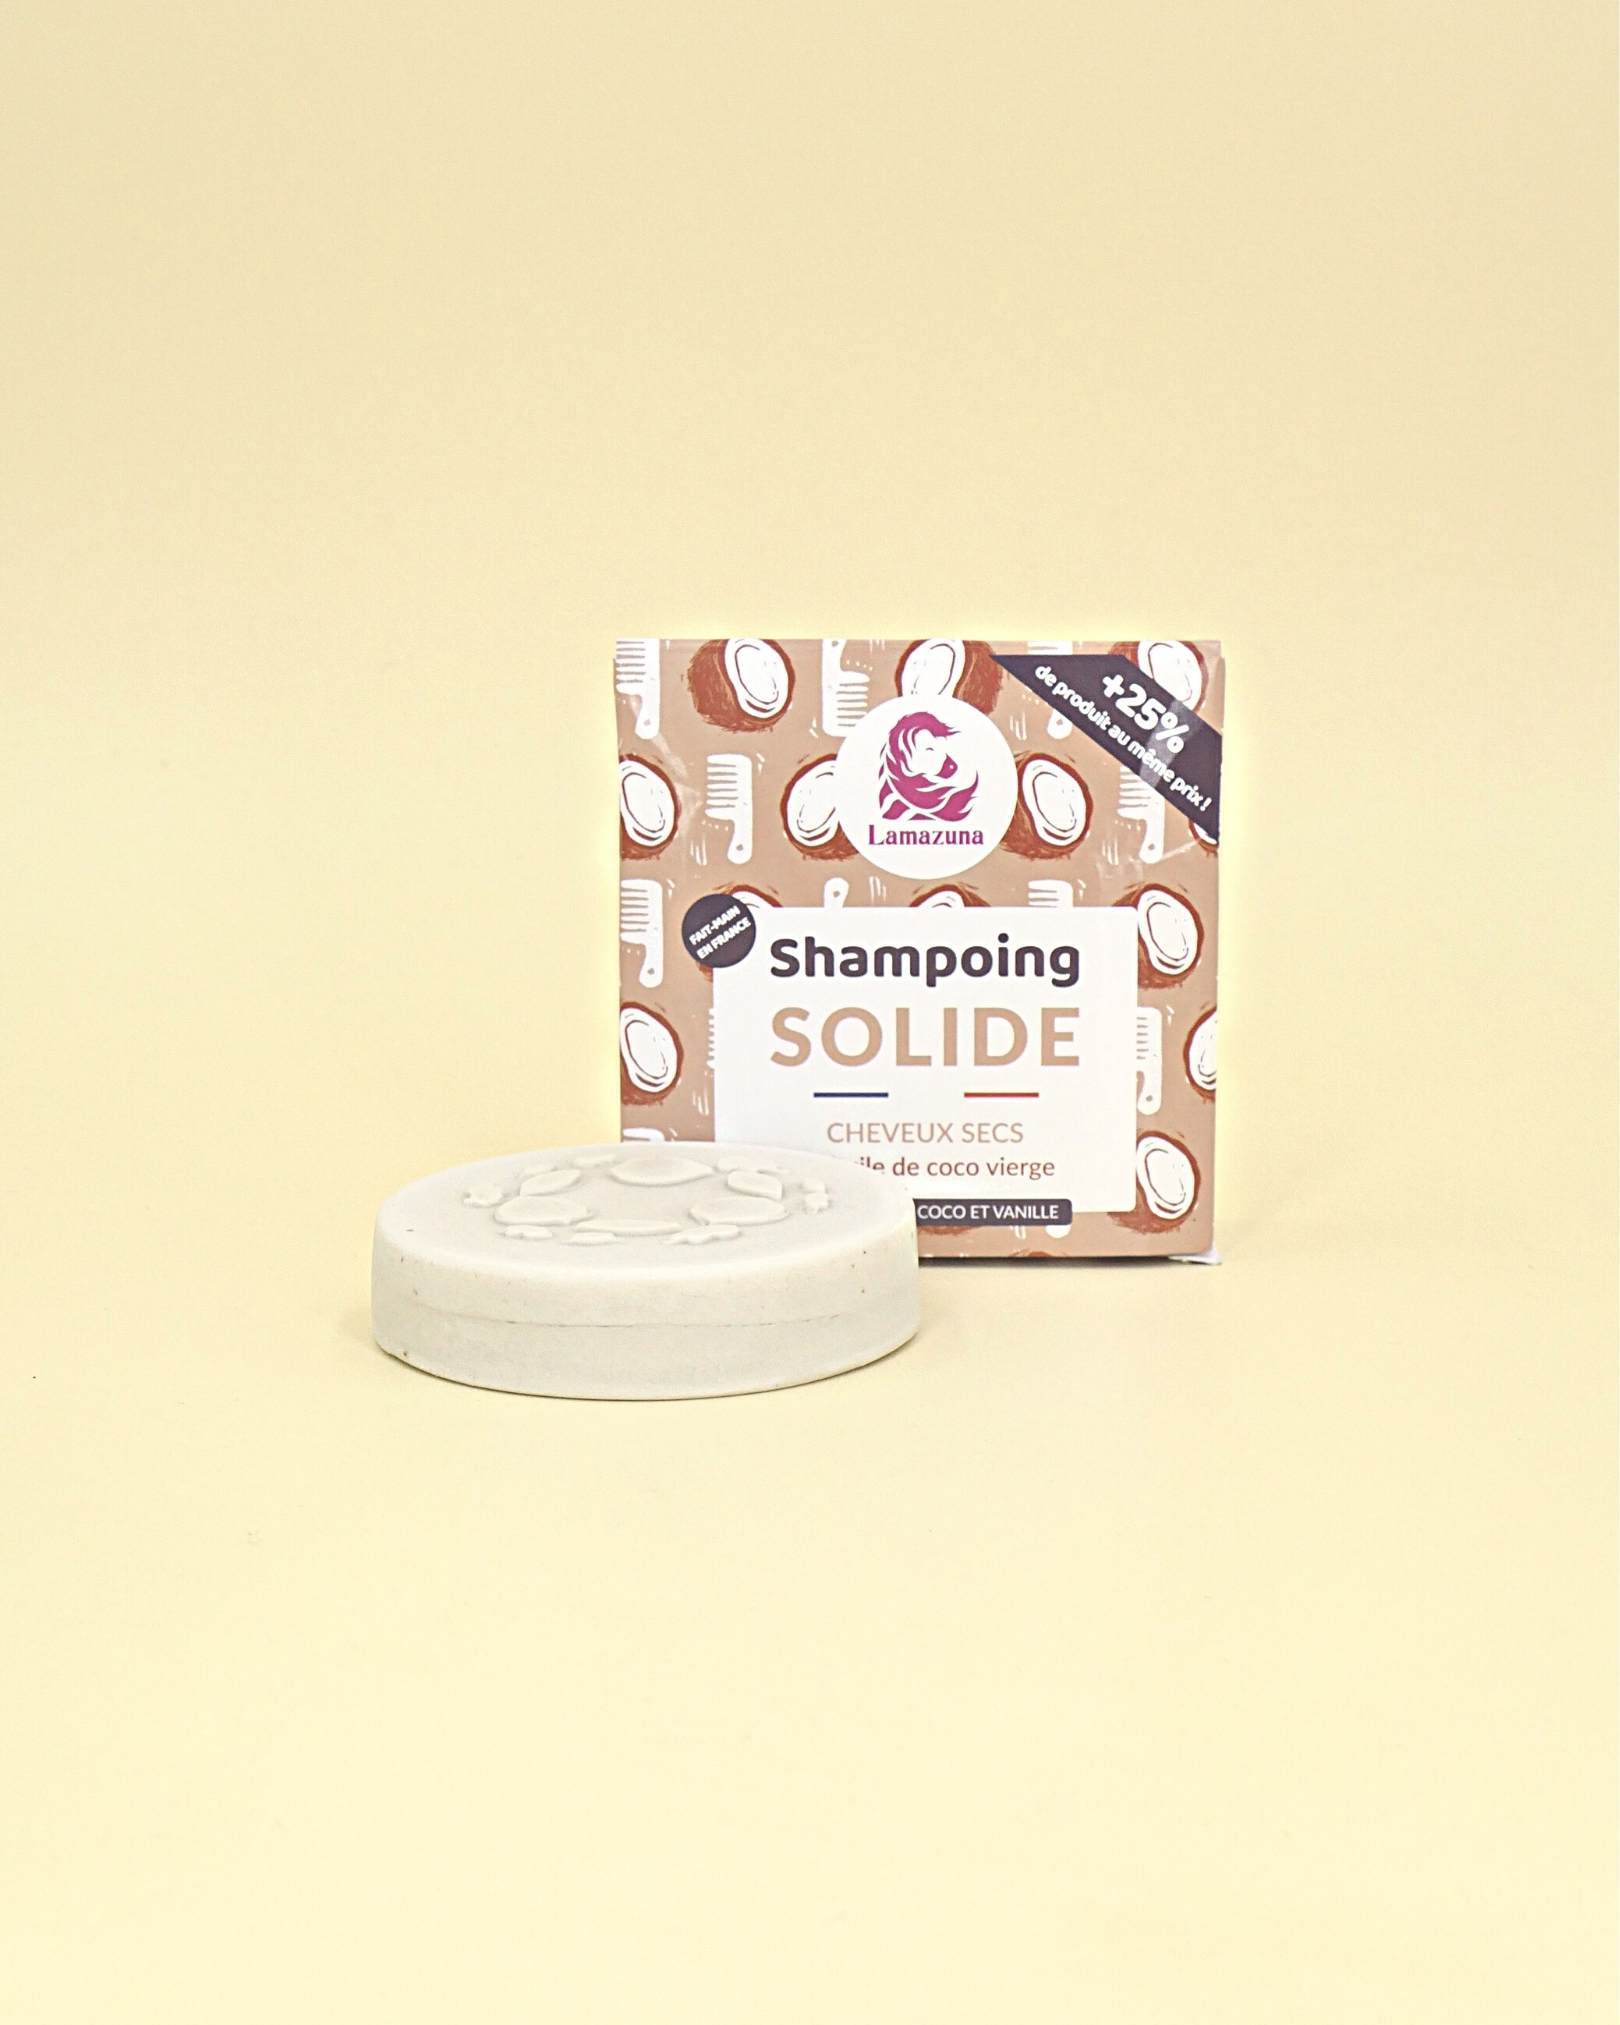 Shampoing solide - cheveux secs - huile de coco vierge - Lamazuna - The Trust Society